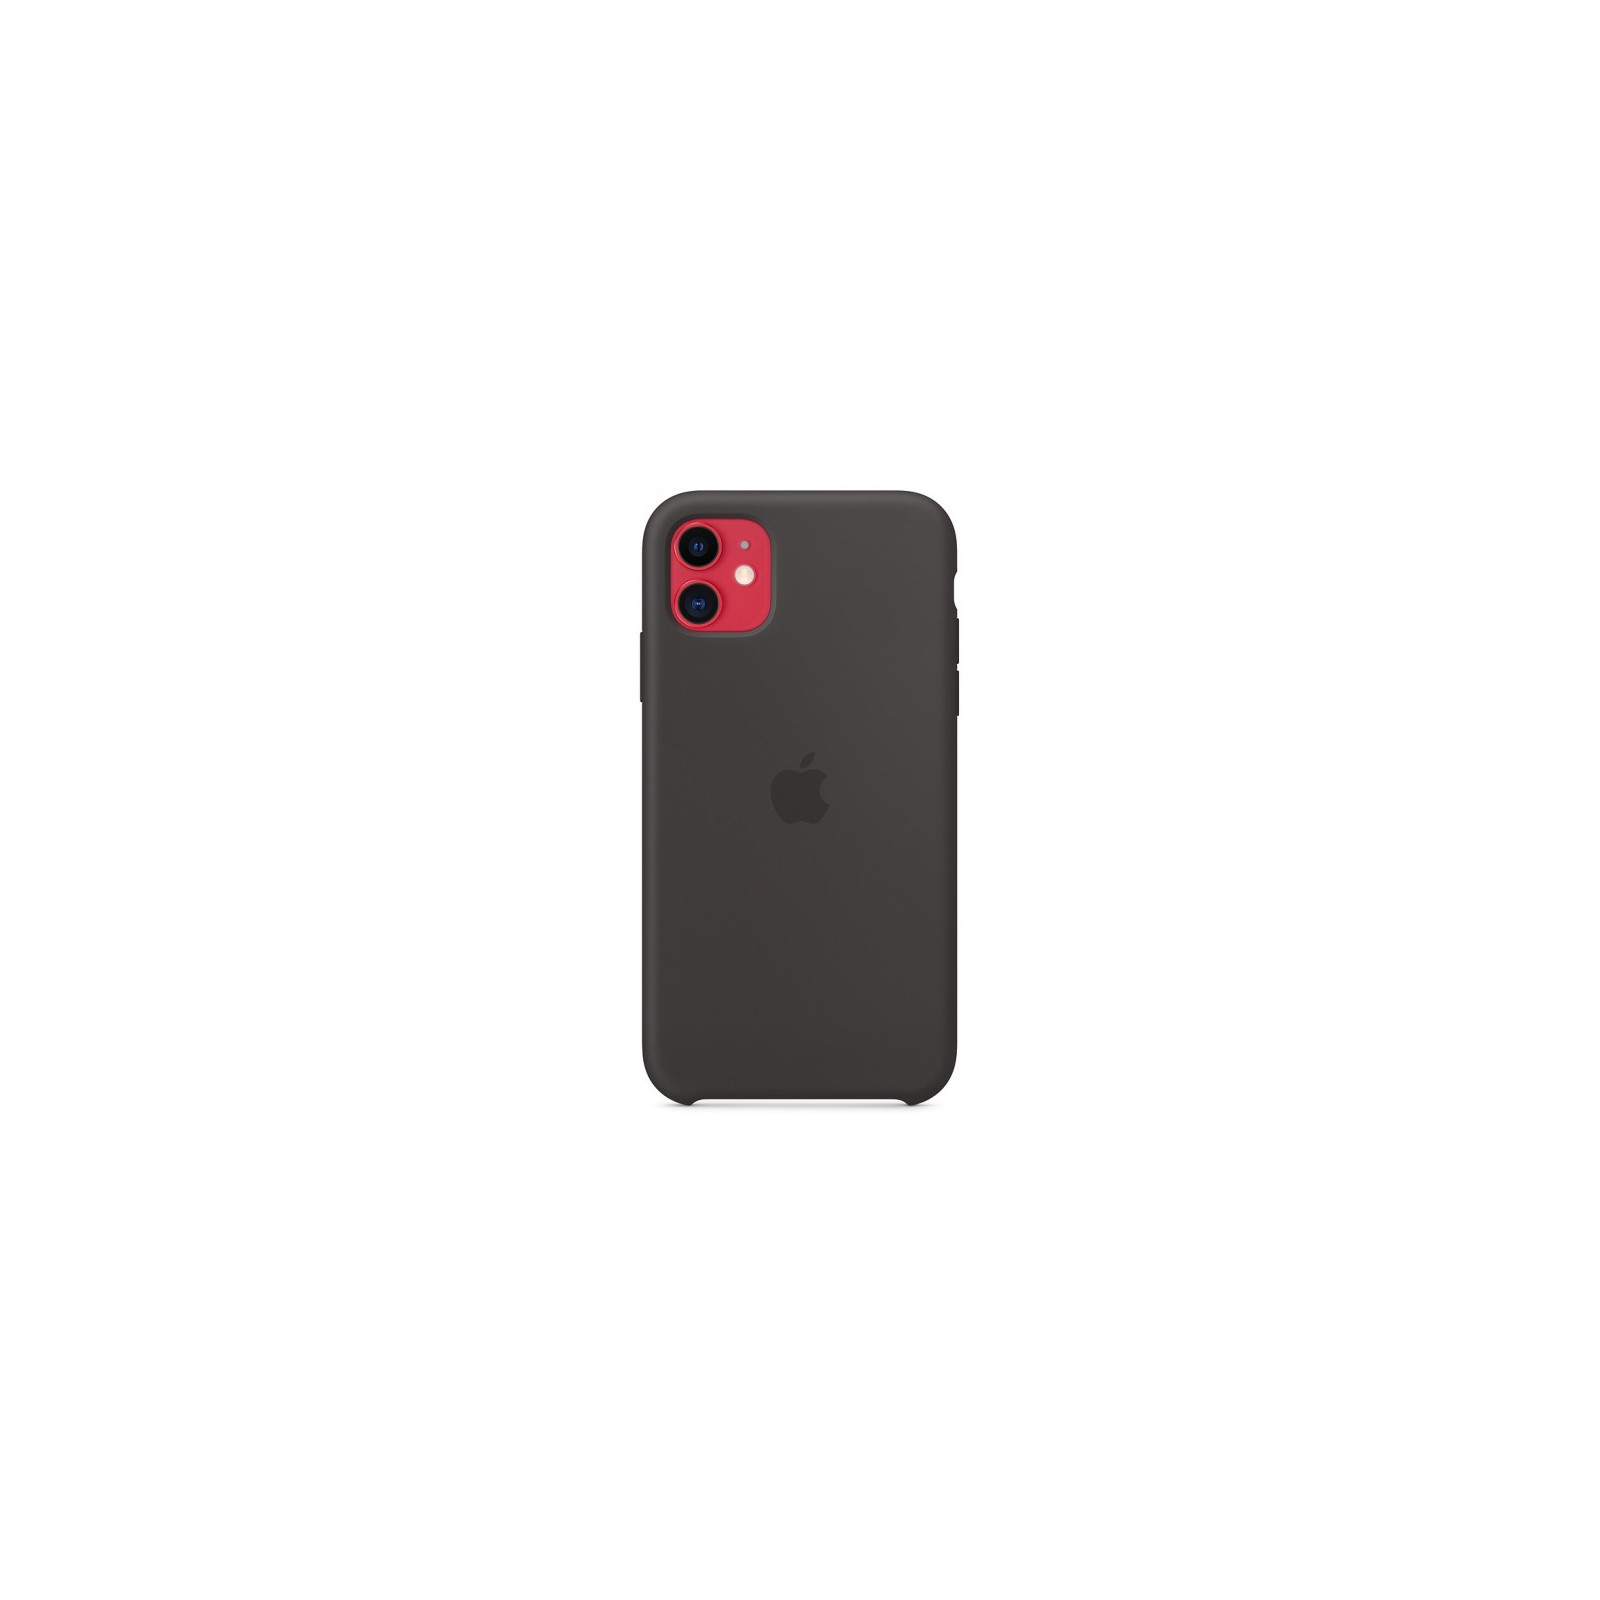 Чехол для мобильного телефона Apple iPhone 11 Silicone Case - Black (MWVU2ZM/A) изображение 6